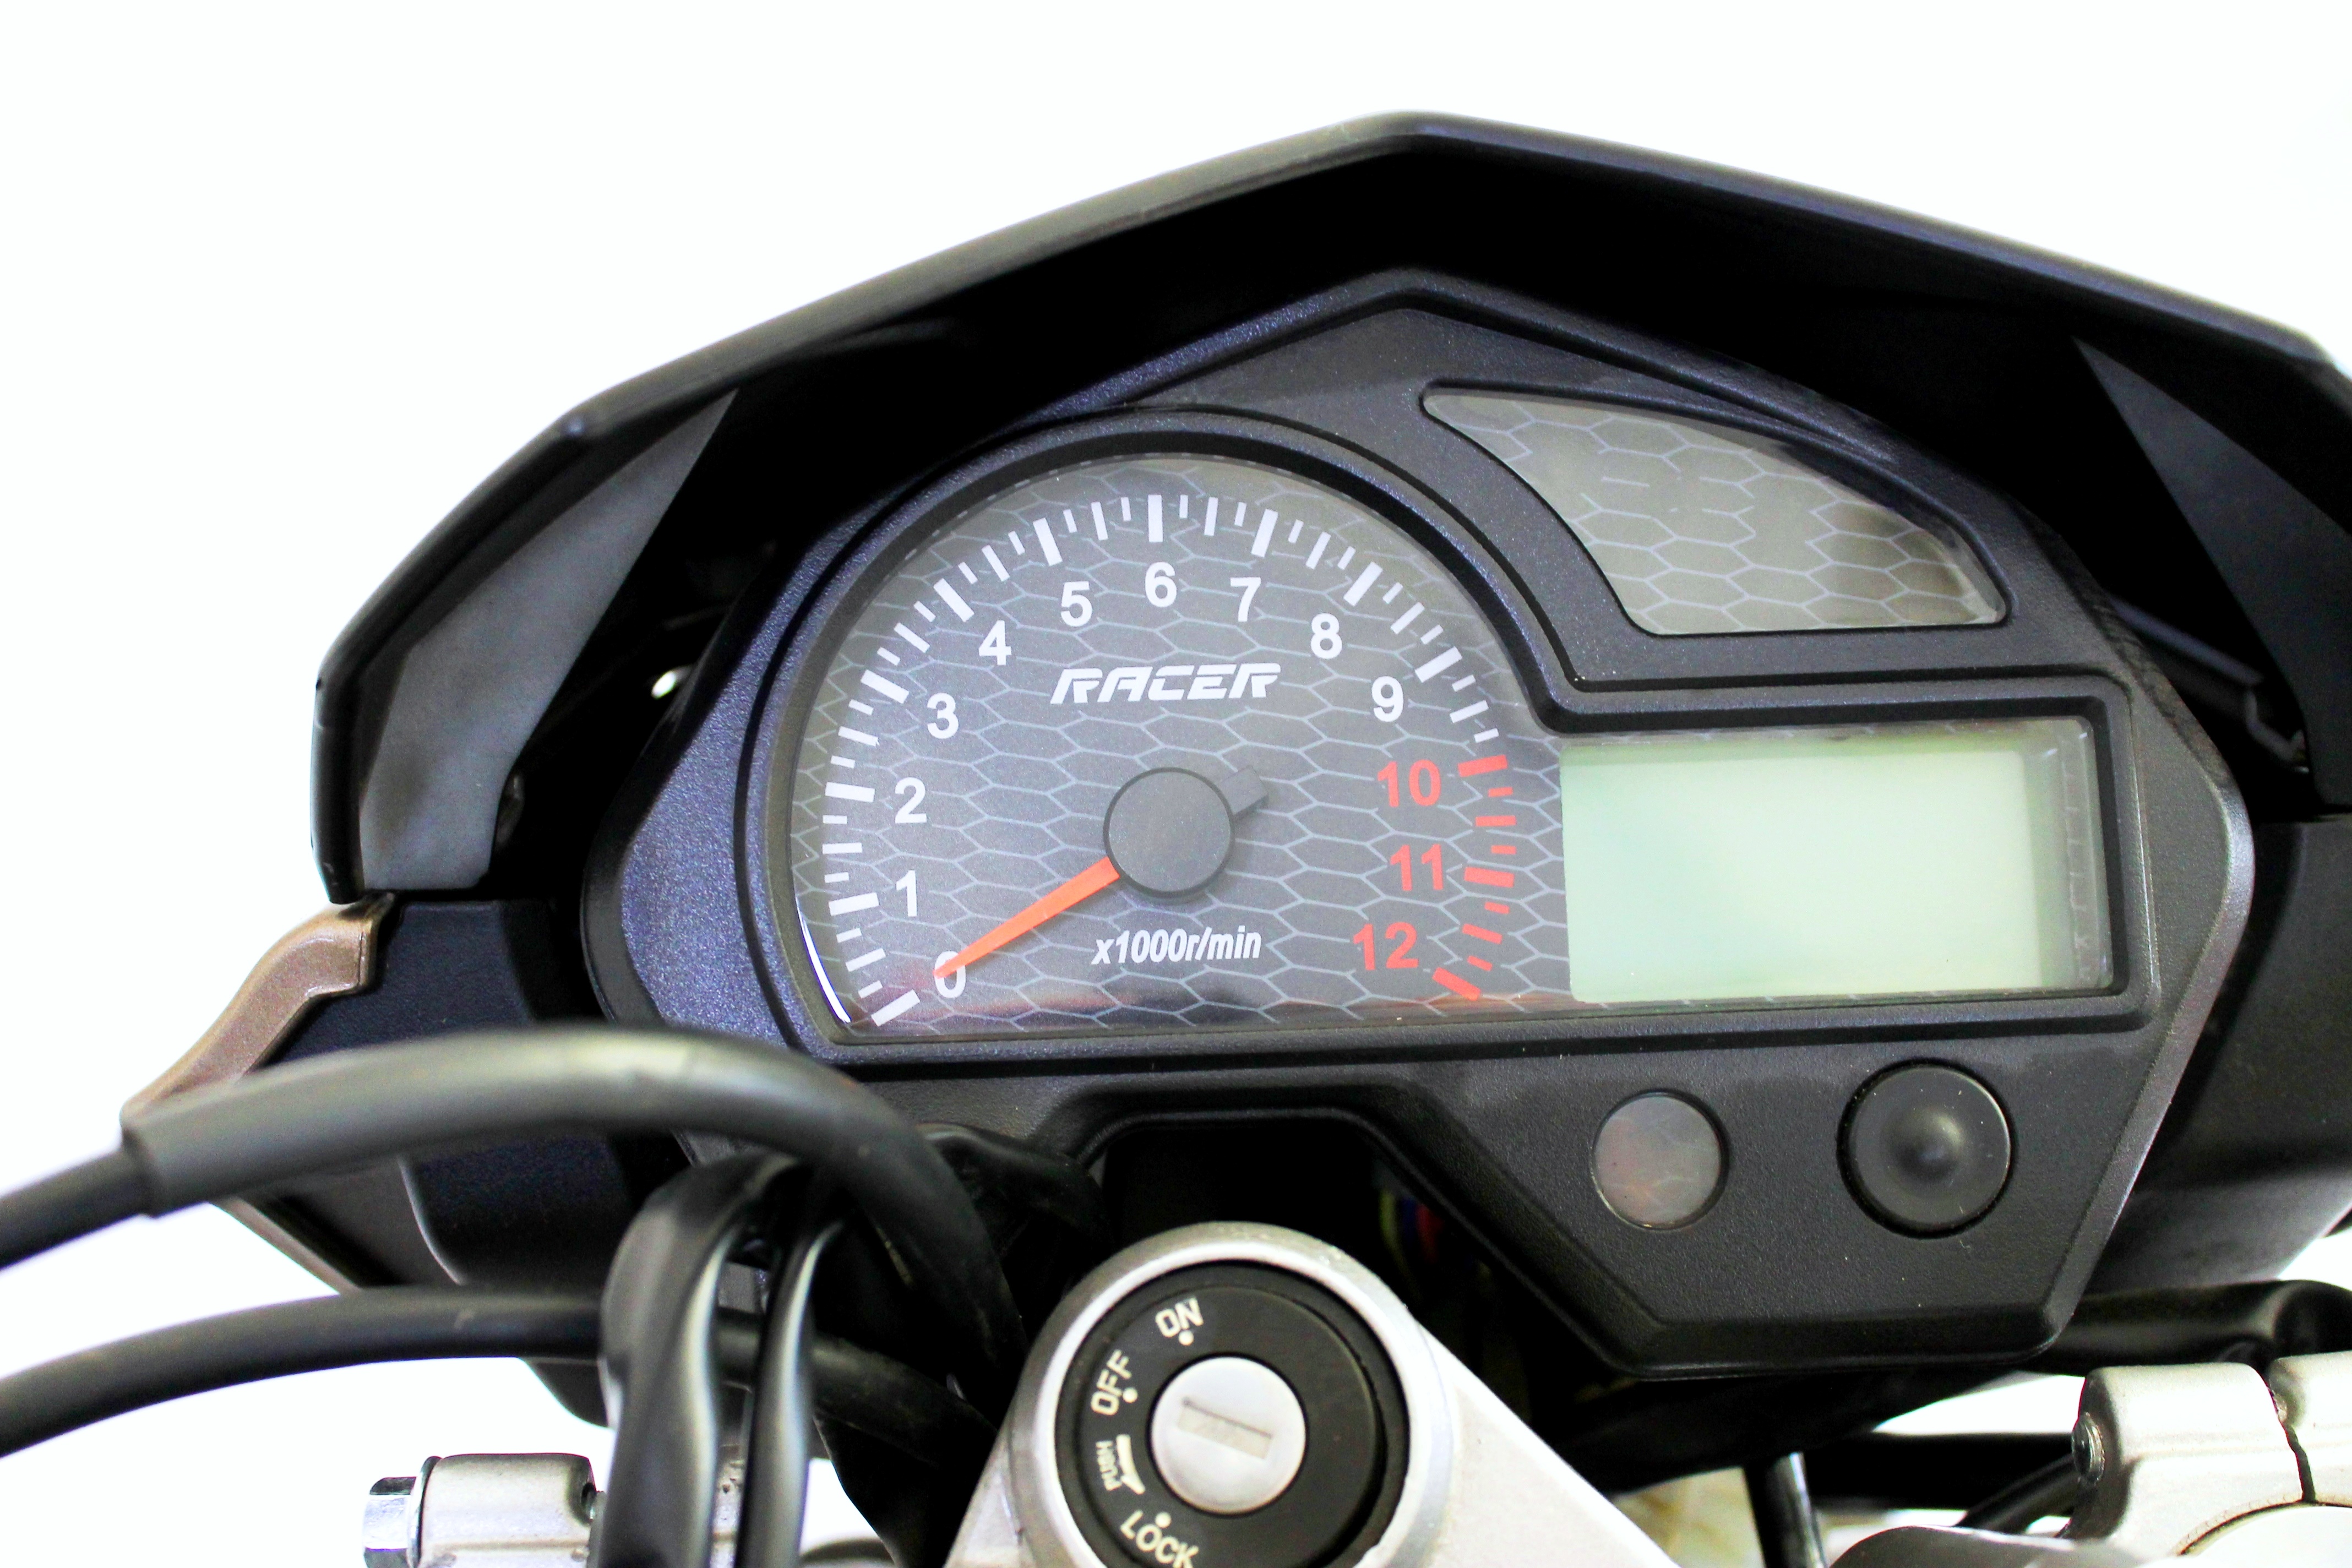 Нитро Рейсер 250 - российско-китайский ответ японским мотоциклам